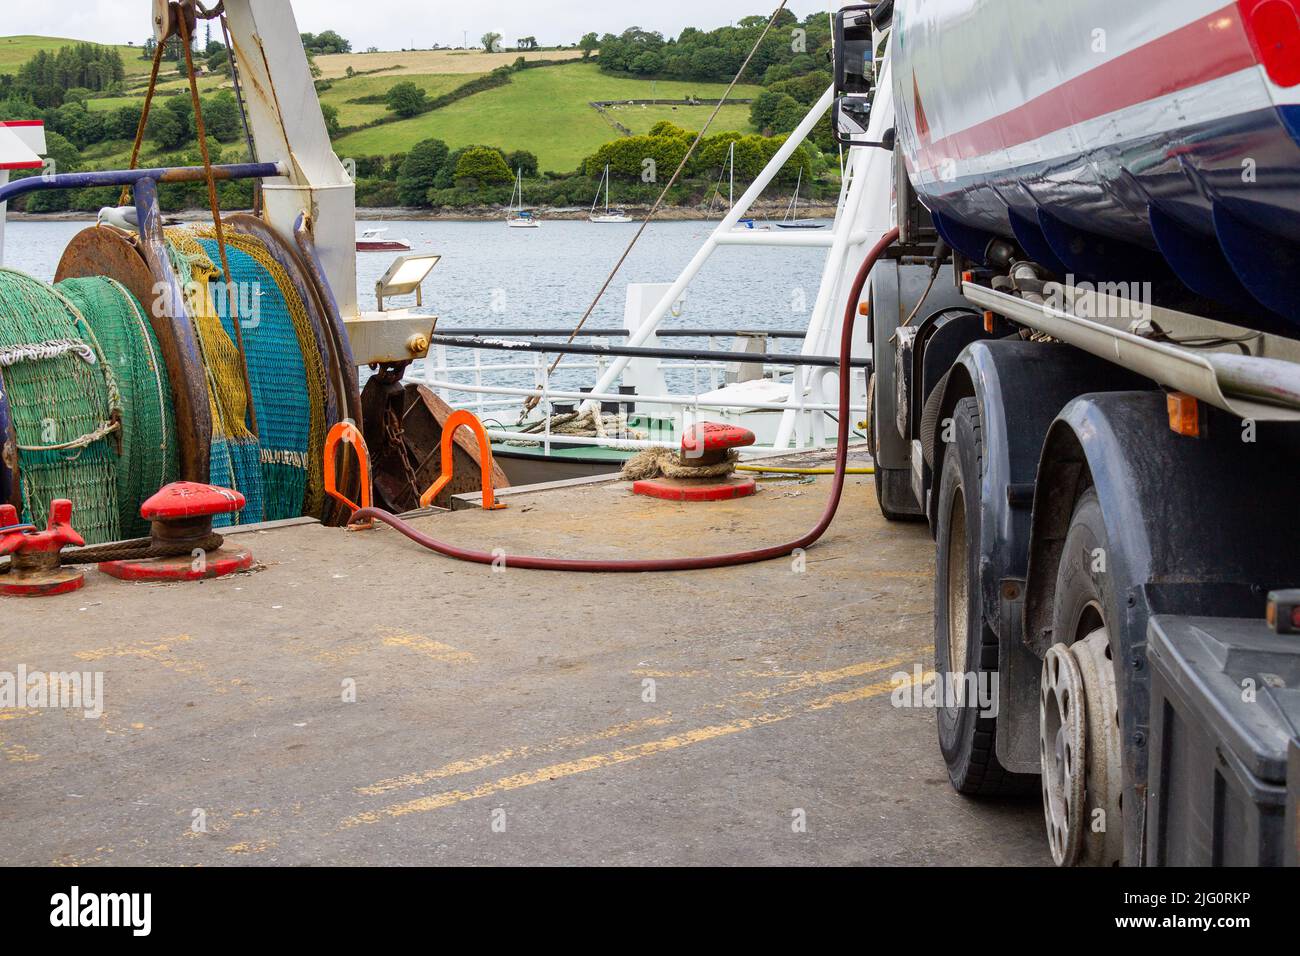 Pesca Trawler Tomando combustible diesel del camión cisterna. Foto de stock